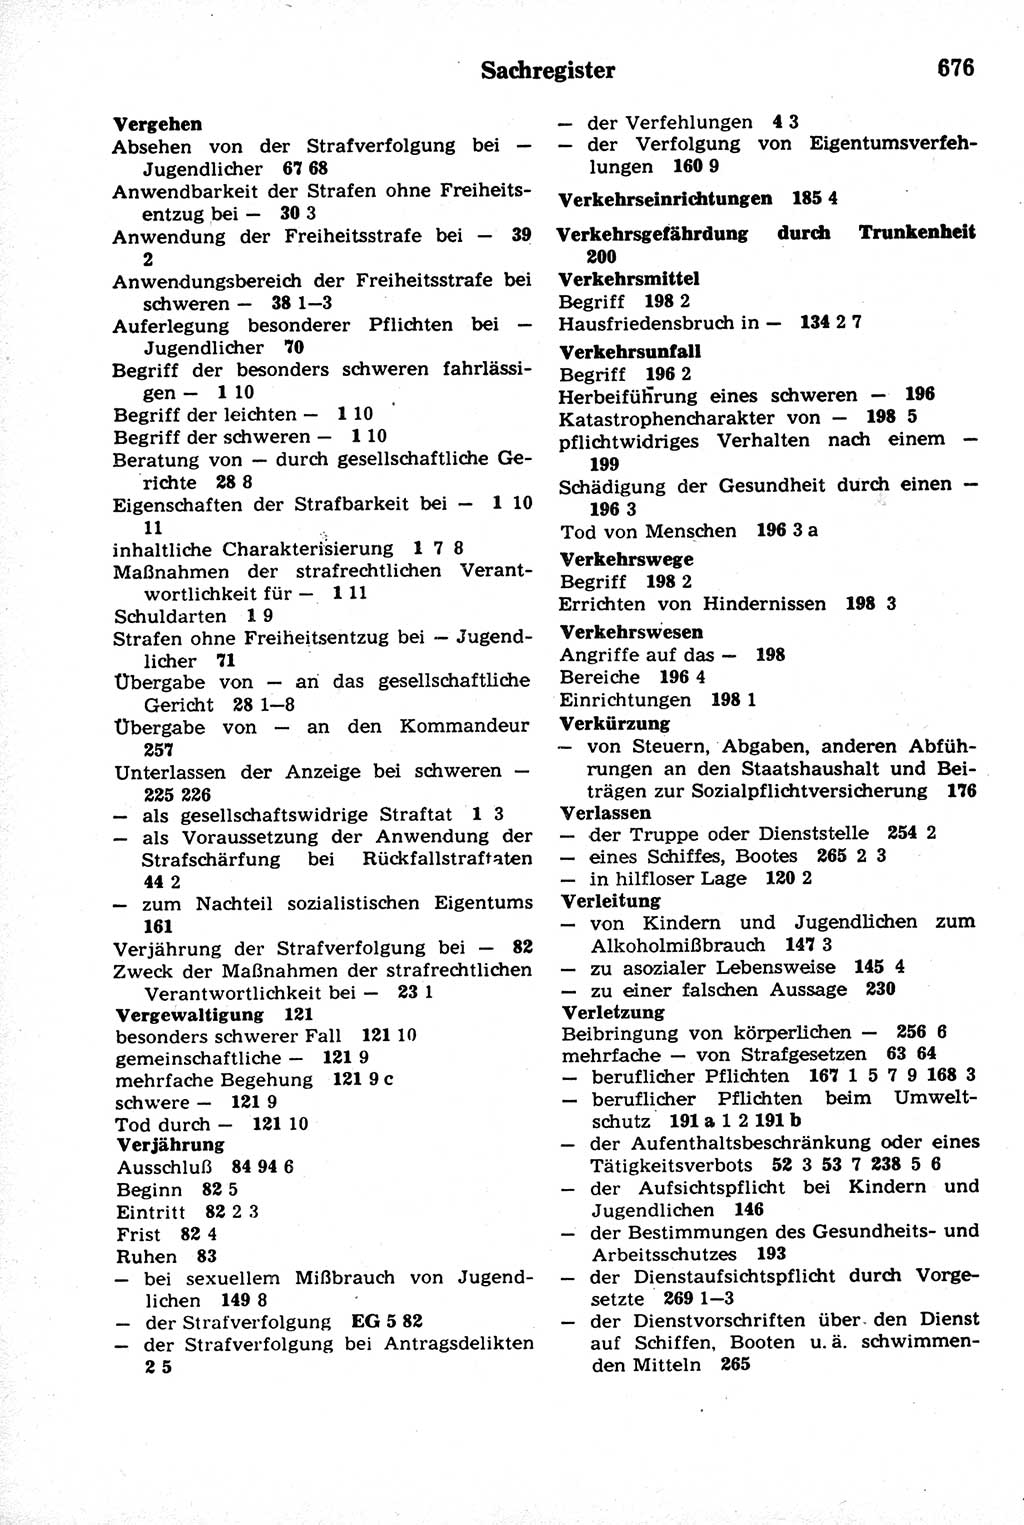 Strafrecht der Deutschen Demokratischen Republik (DDR), Kommentar zum Strafgesetzbuch (StGB) 1981, Seite 676 (Strafr. DDR Komm. StGB 1981, S. 676)